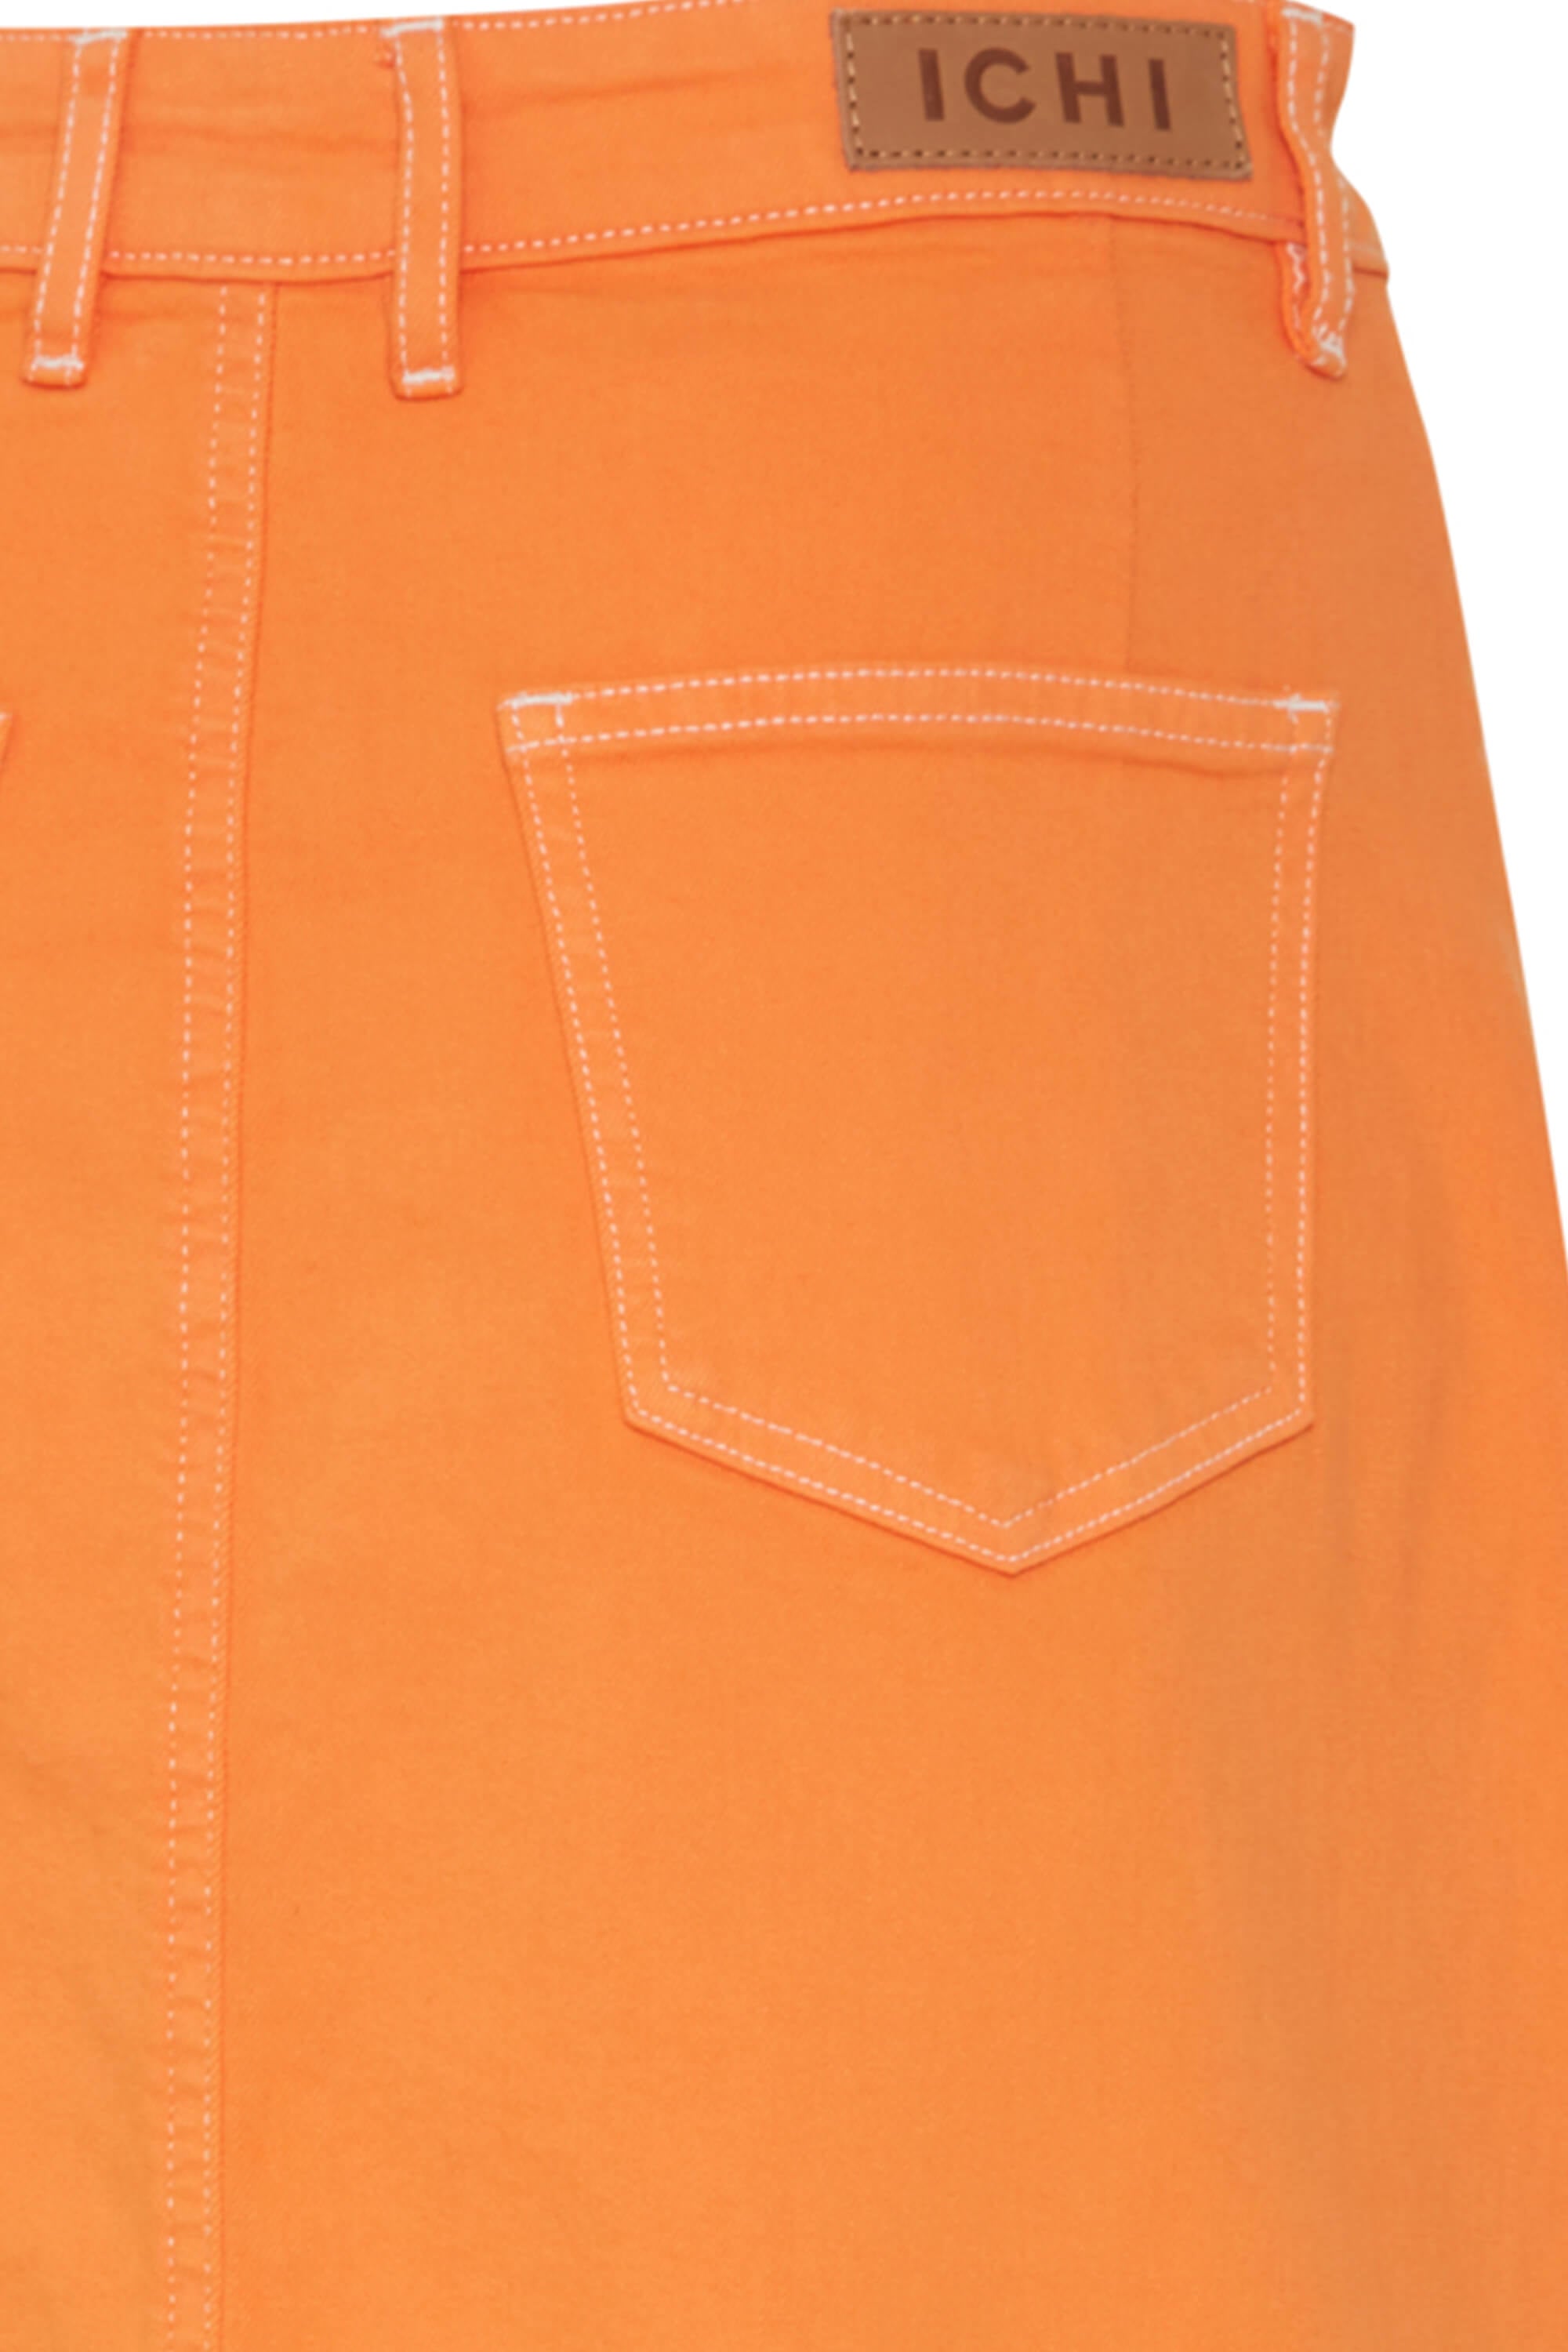 Ichi Cenny Denim Skirt Orange